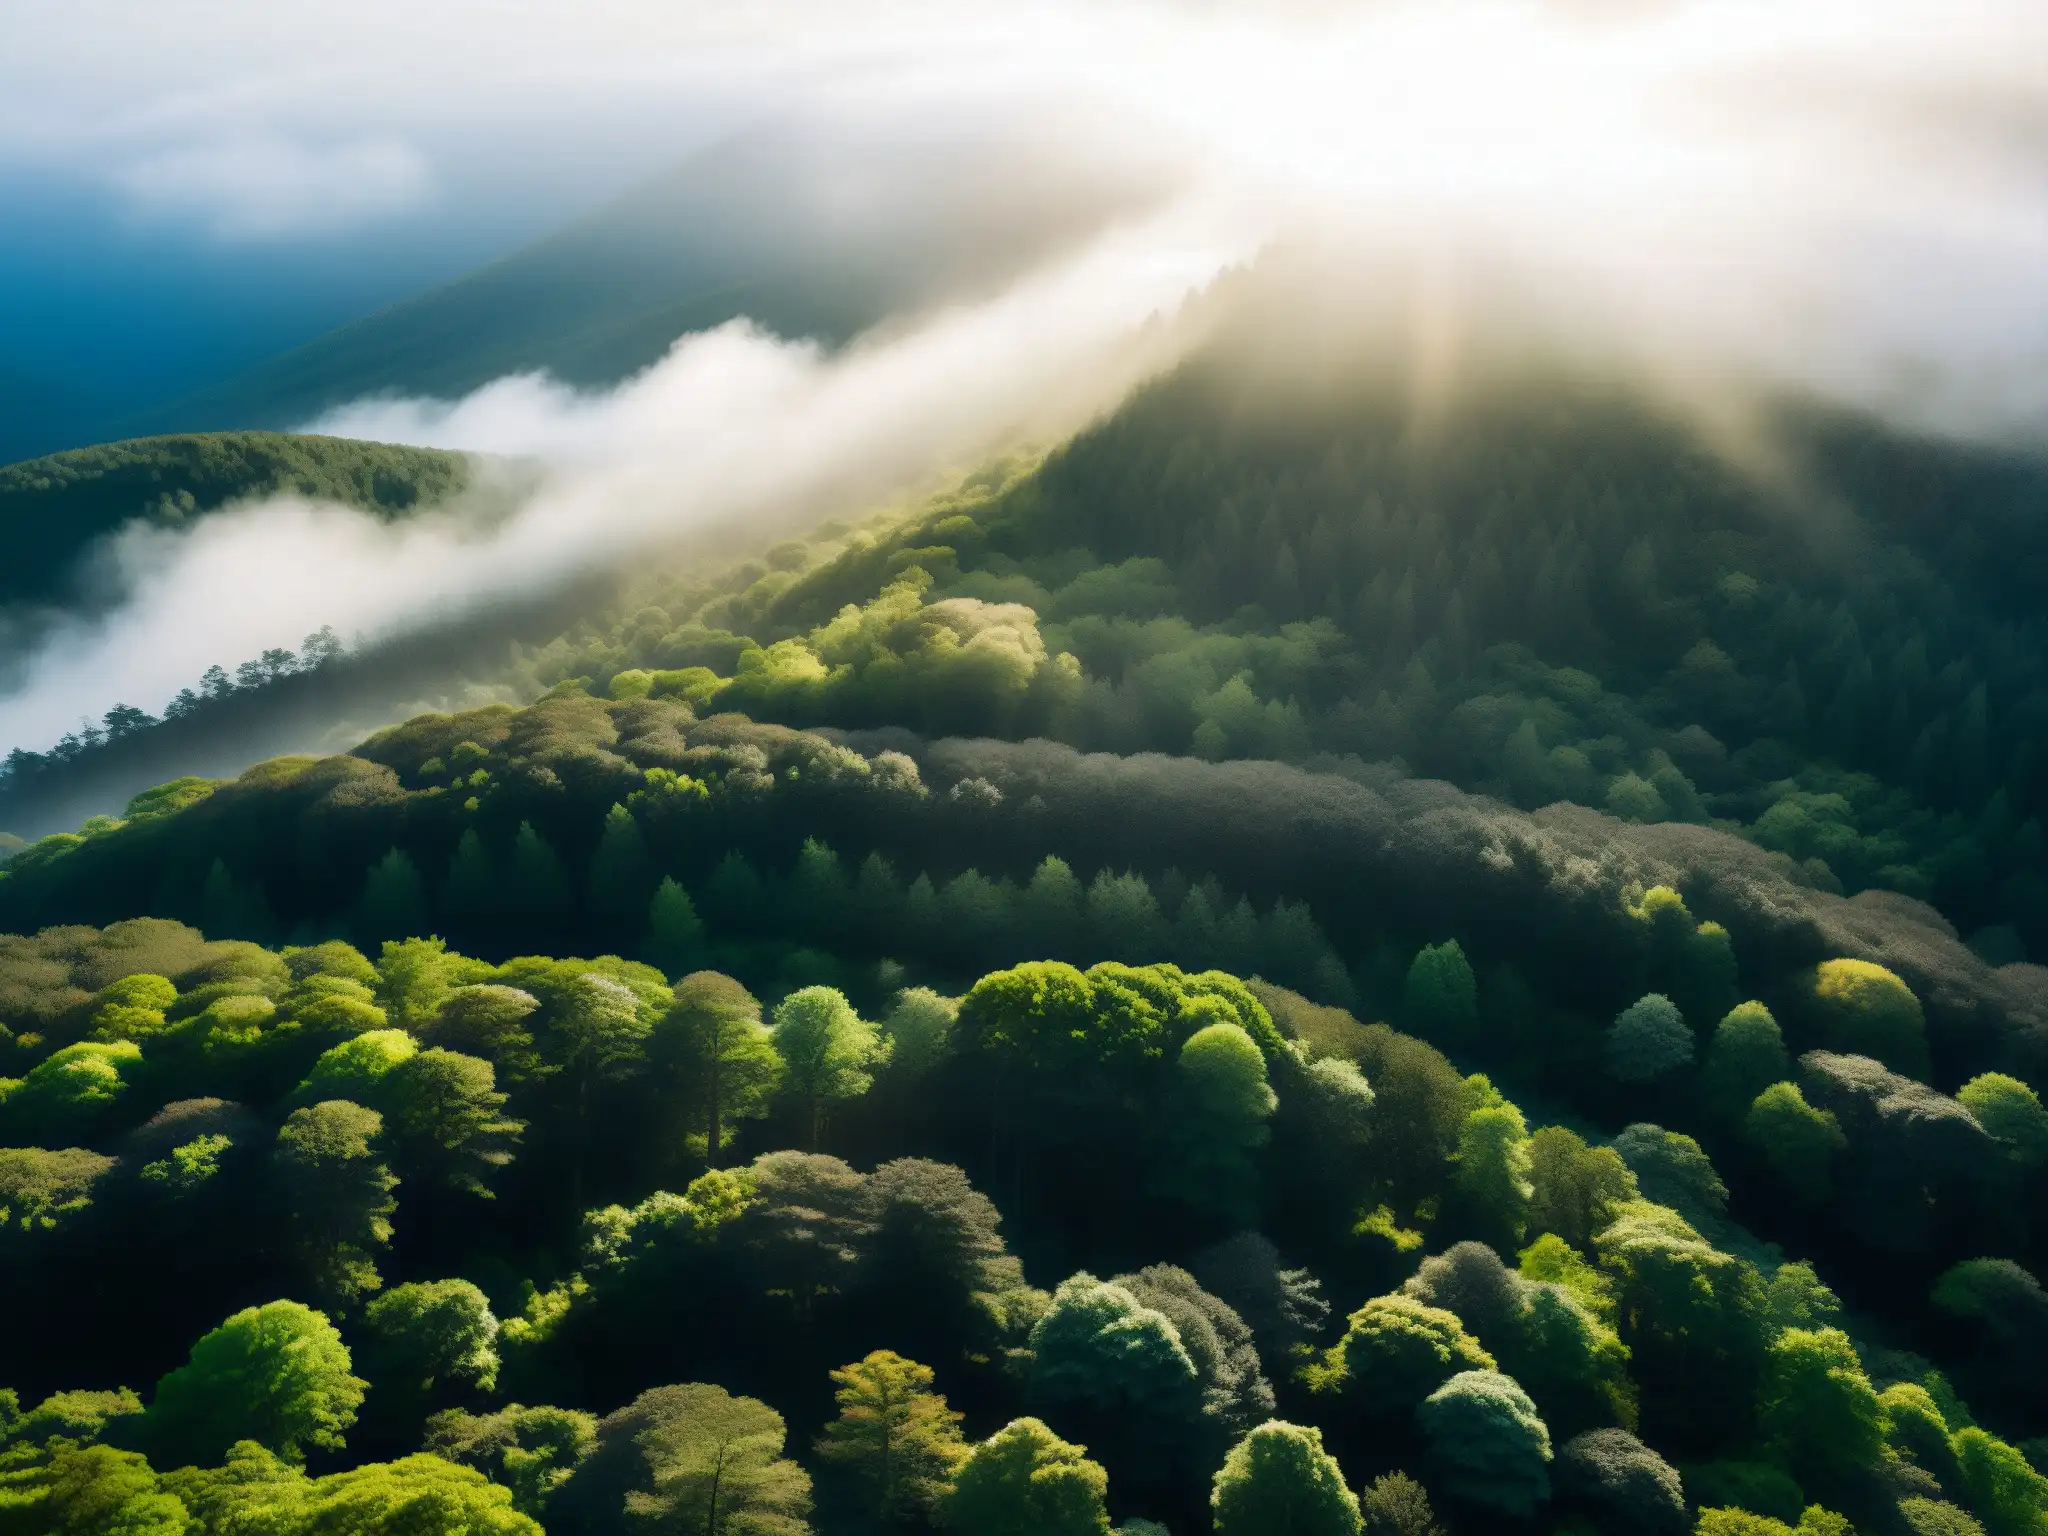 Versión digital bosque suicidios Aokigahara: Vista aérea del bosque envuelto en niebla dorada, con luz solar filtrándose entre los árboles